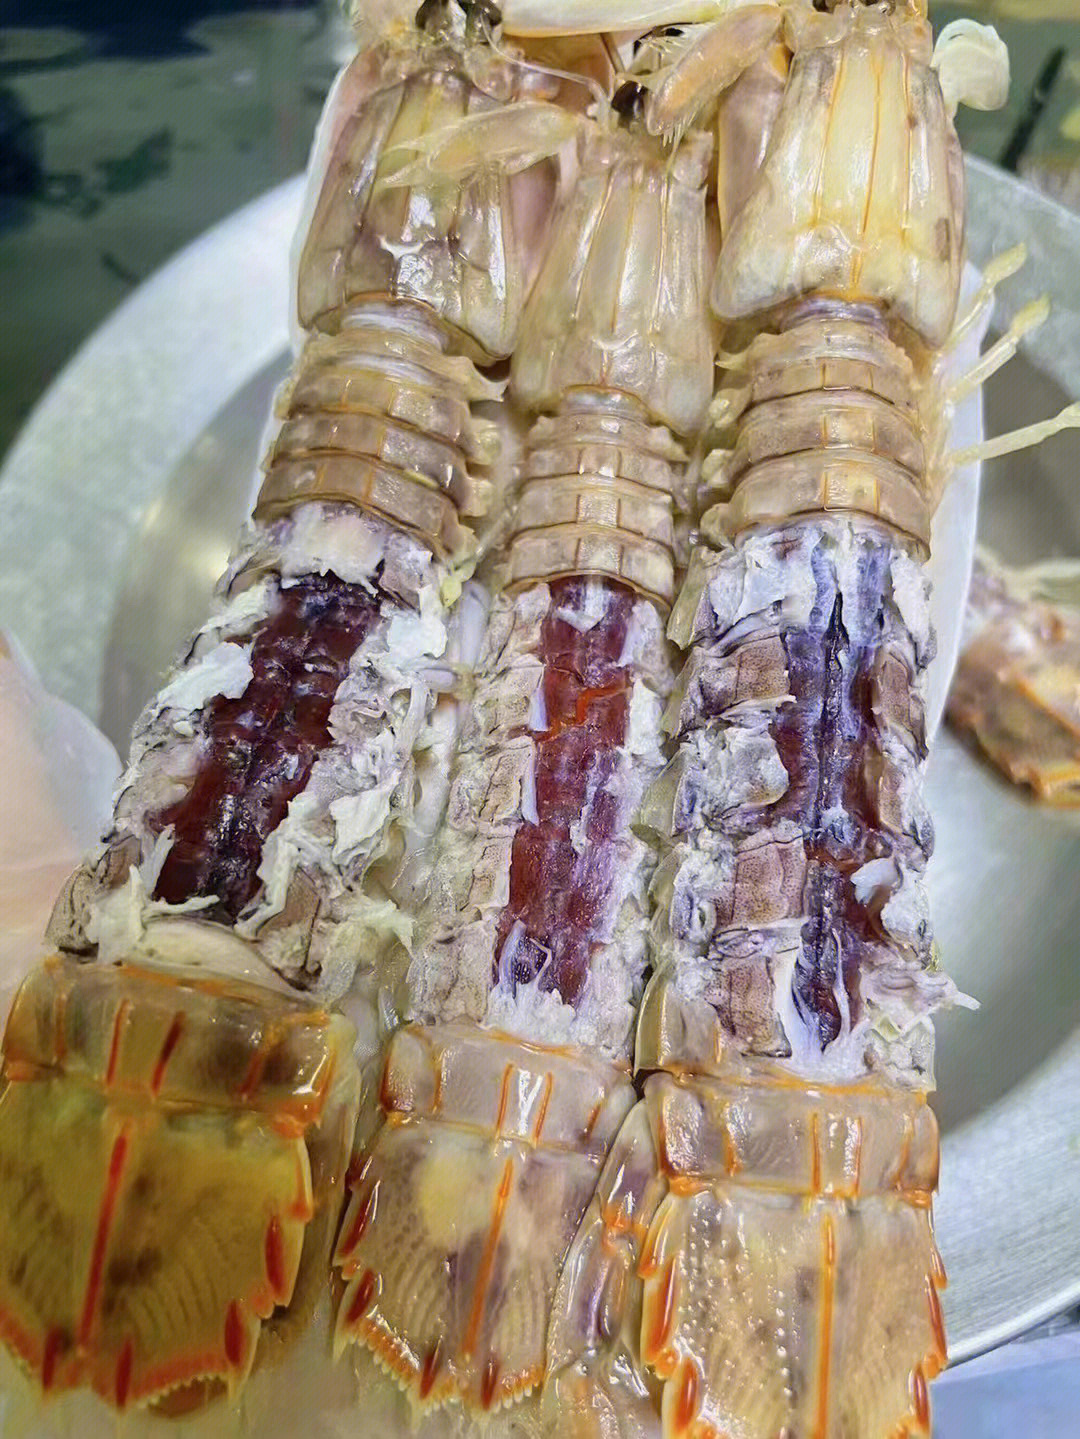 皮皮虾的结构图片